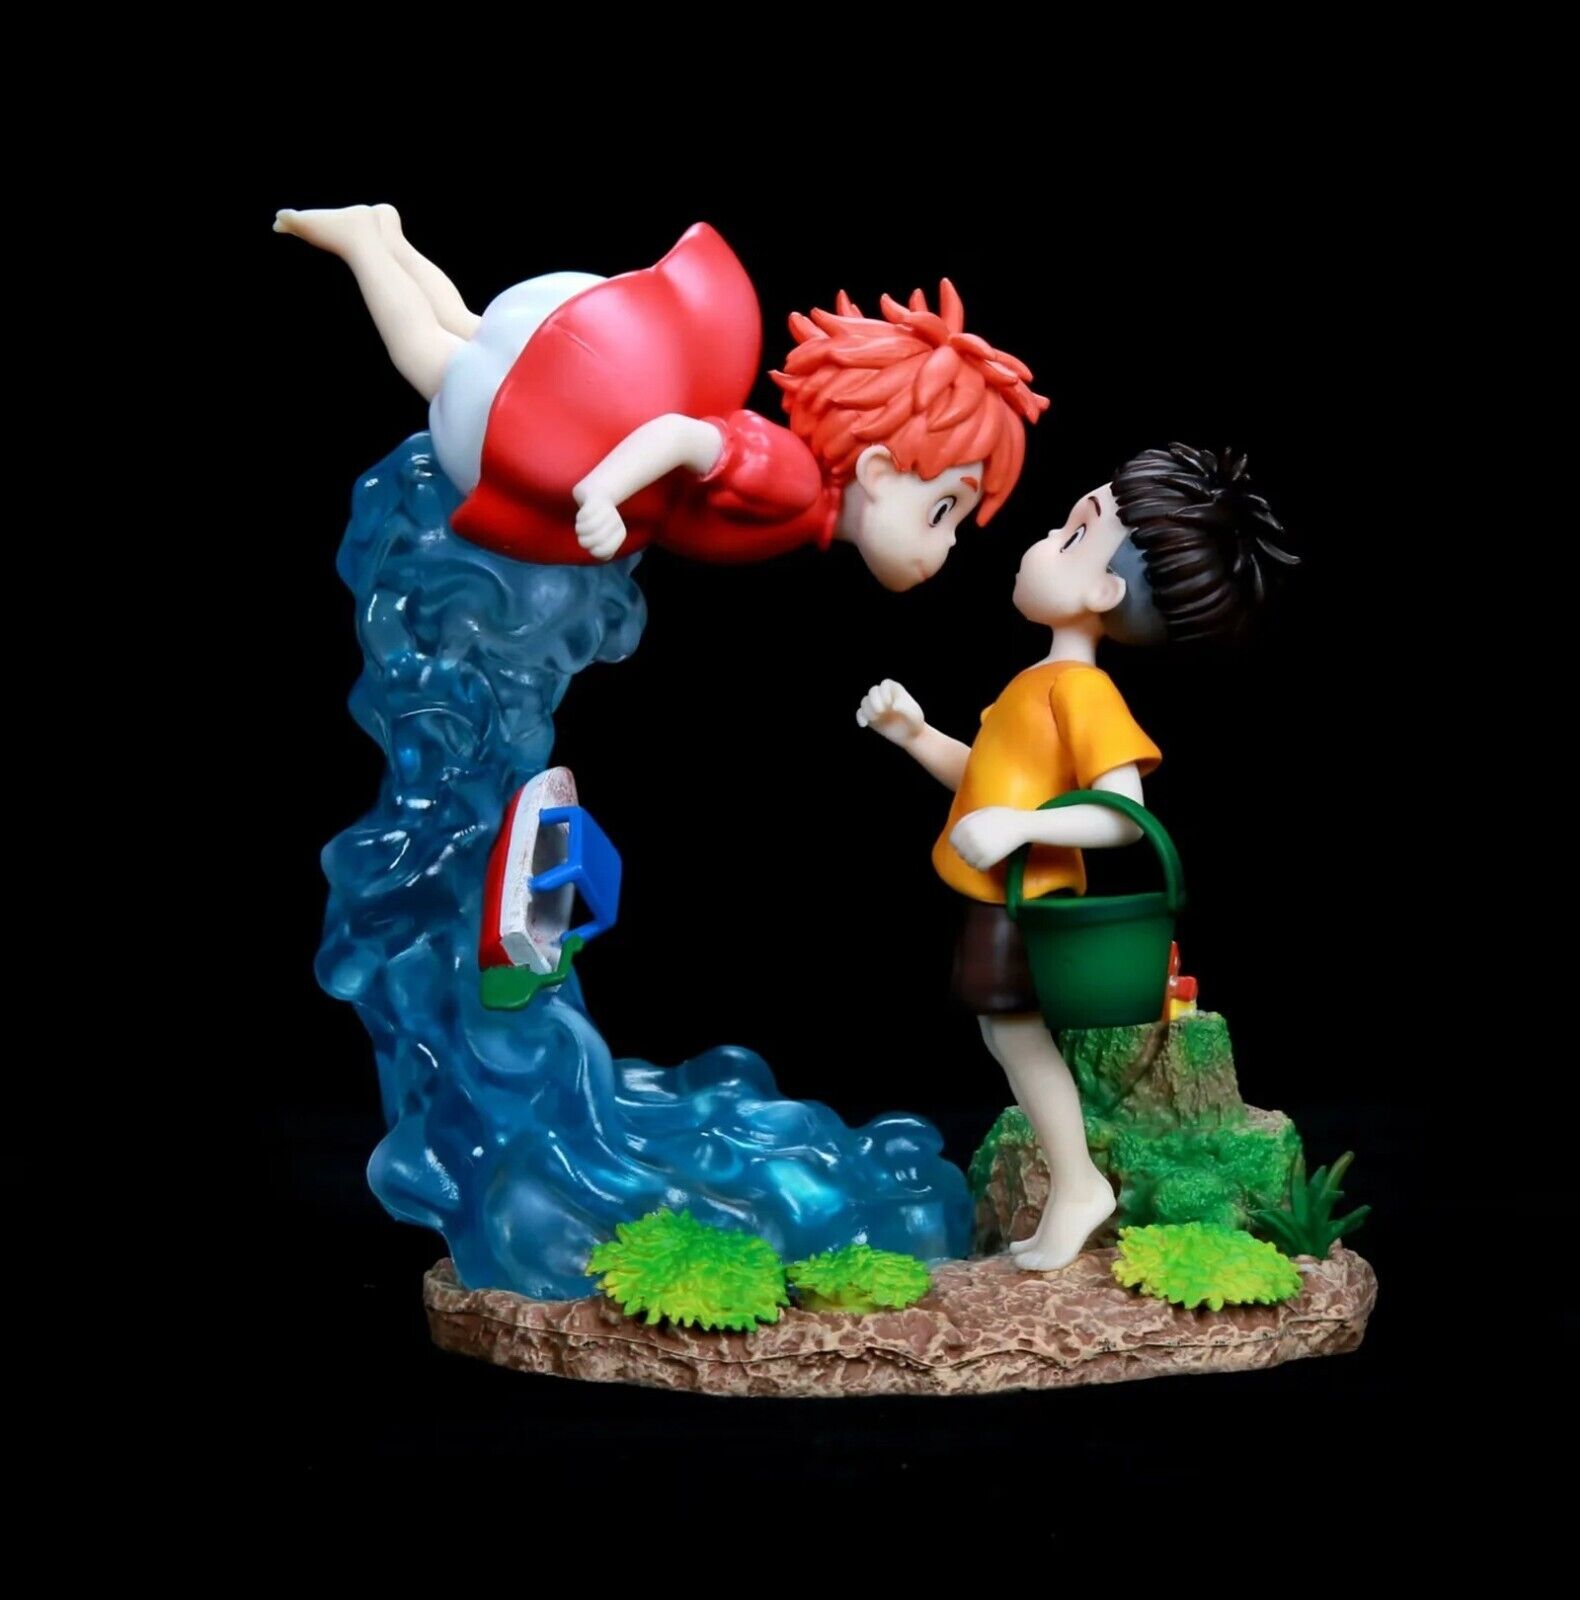 Ponyo on The Cliff Figure Toys Ponyo Sosuke Scene Model Doll Statue Gift No Box